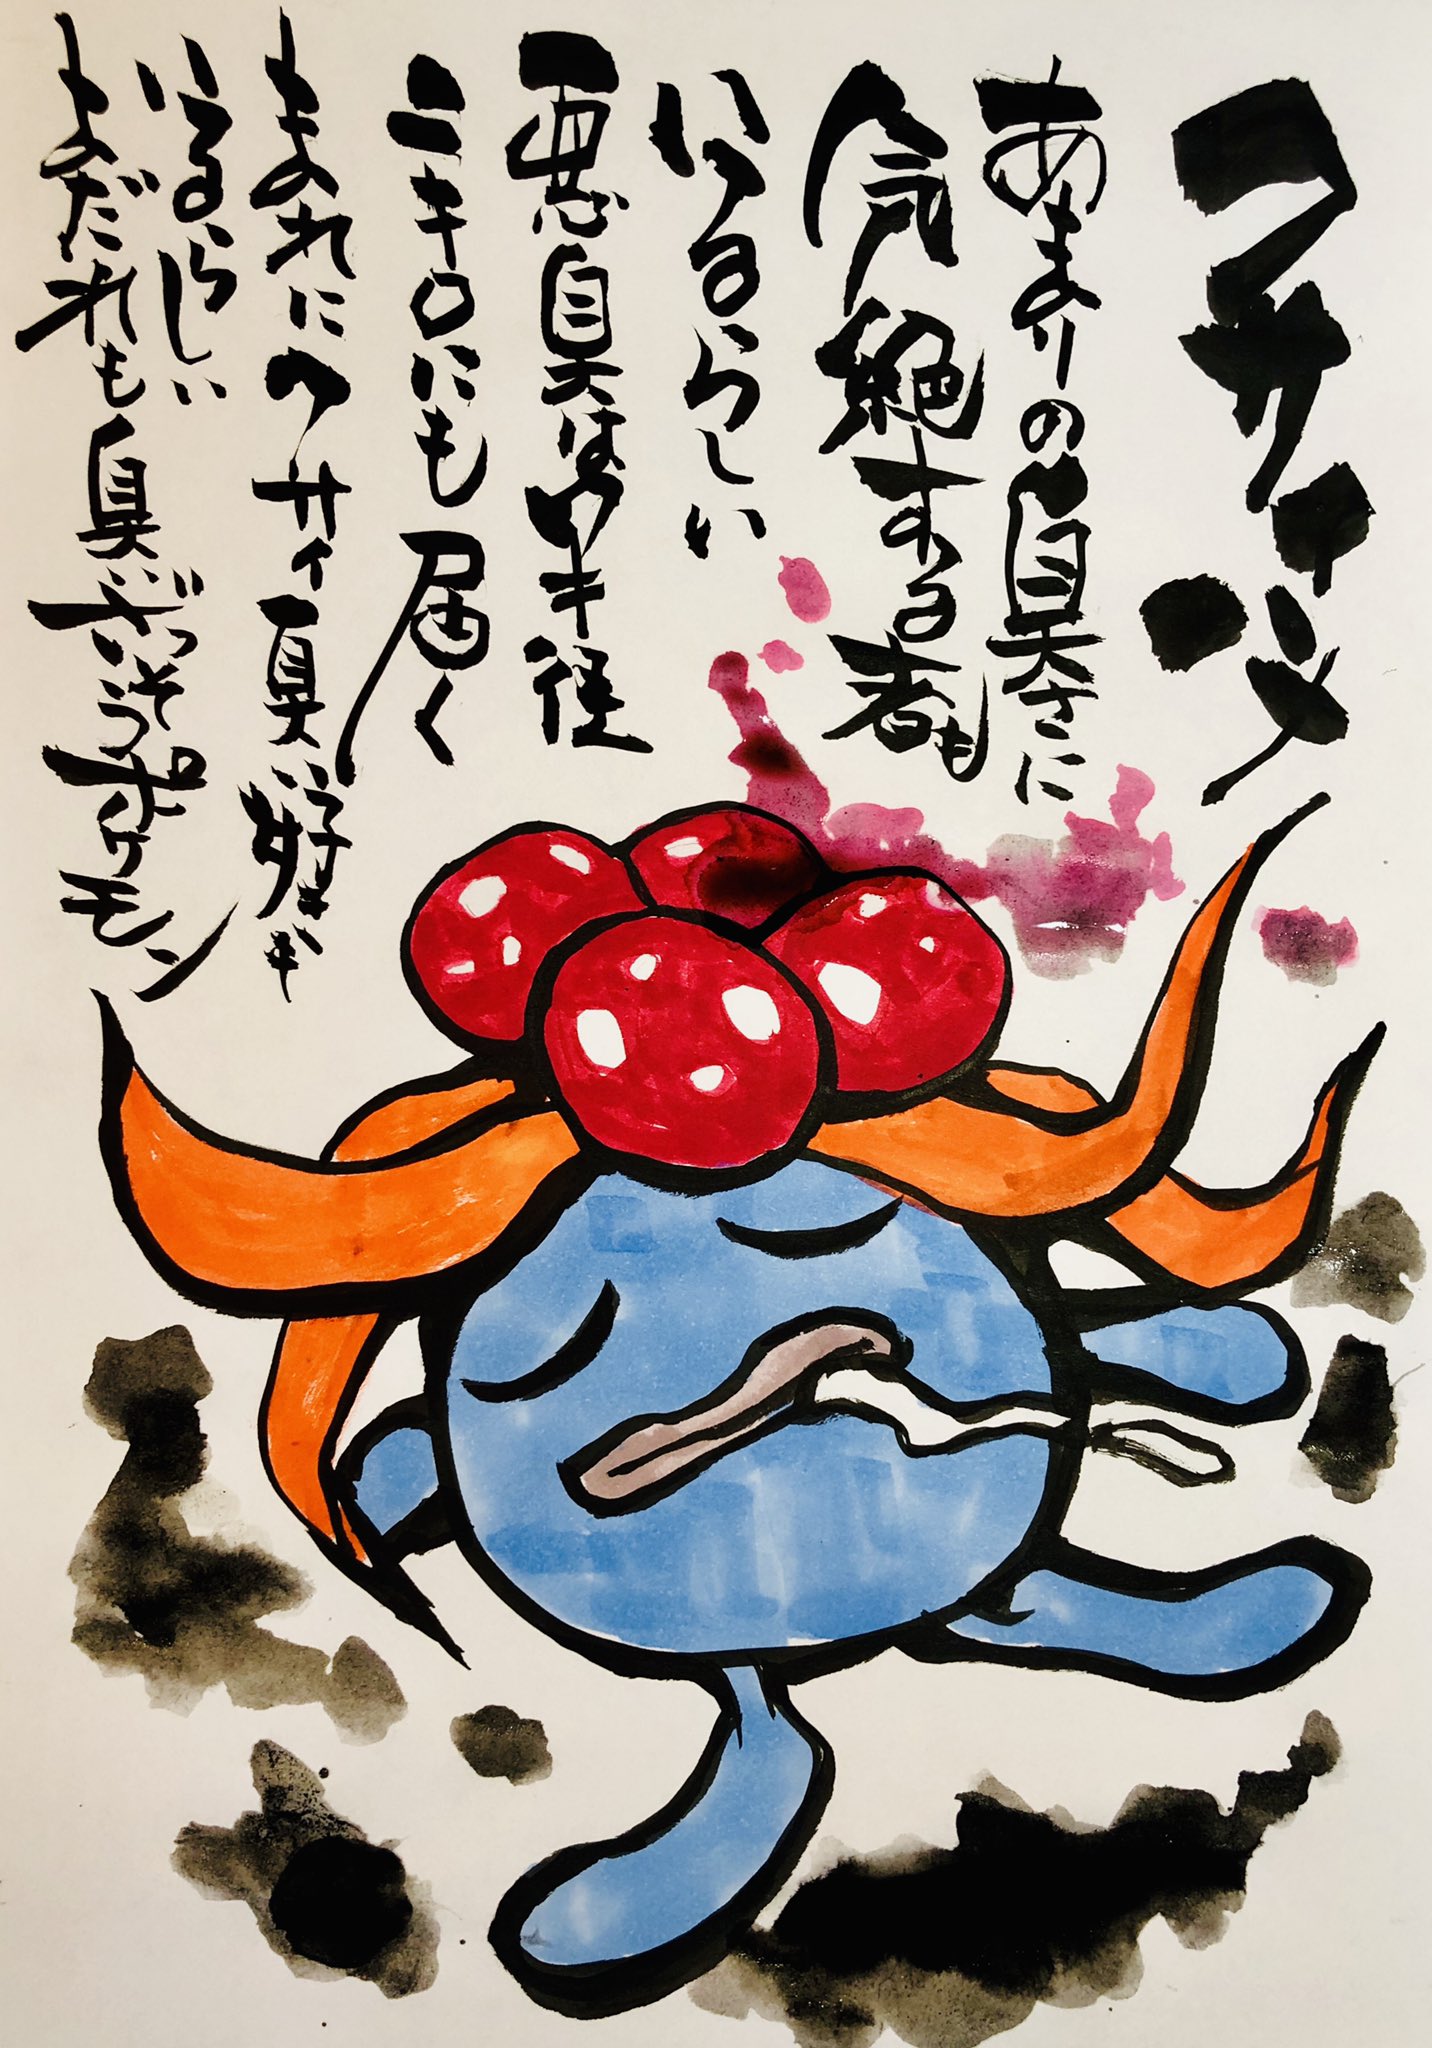 Uzivatel Aki Shimamoto ポケモン絵師休憩中エネルギーアートクリエーター Na Twitteru 筆ペンでポケモンを描く クサイハナ あまりの臭さに気絶する者もいるらしい 悪臭は半径二キロにも届く まれにクサイ臭い好きもいるらしい よだれも臭いざっそうポケモン